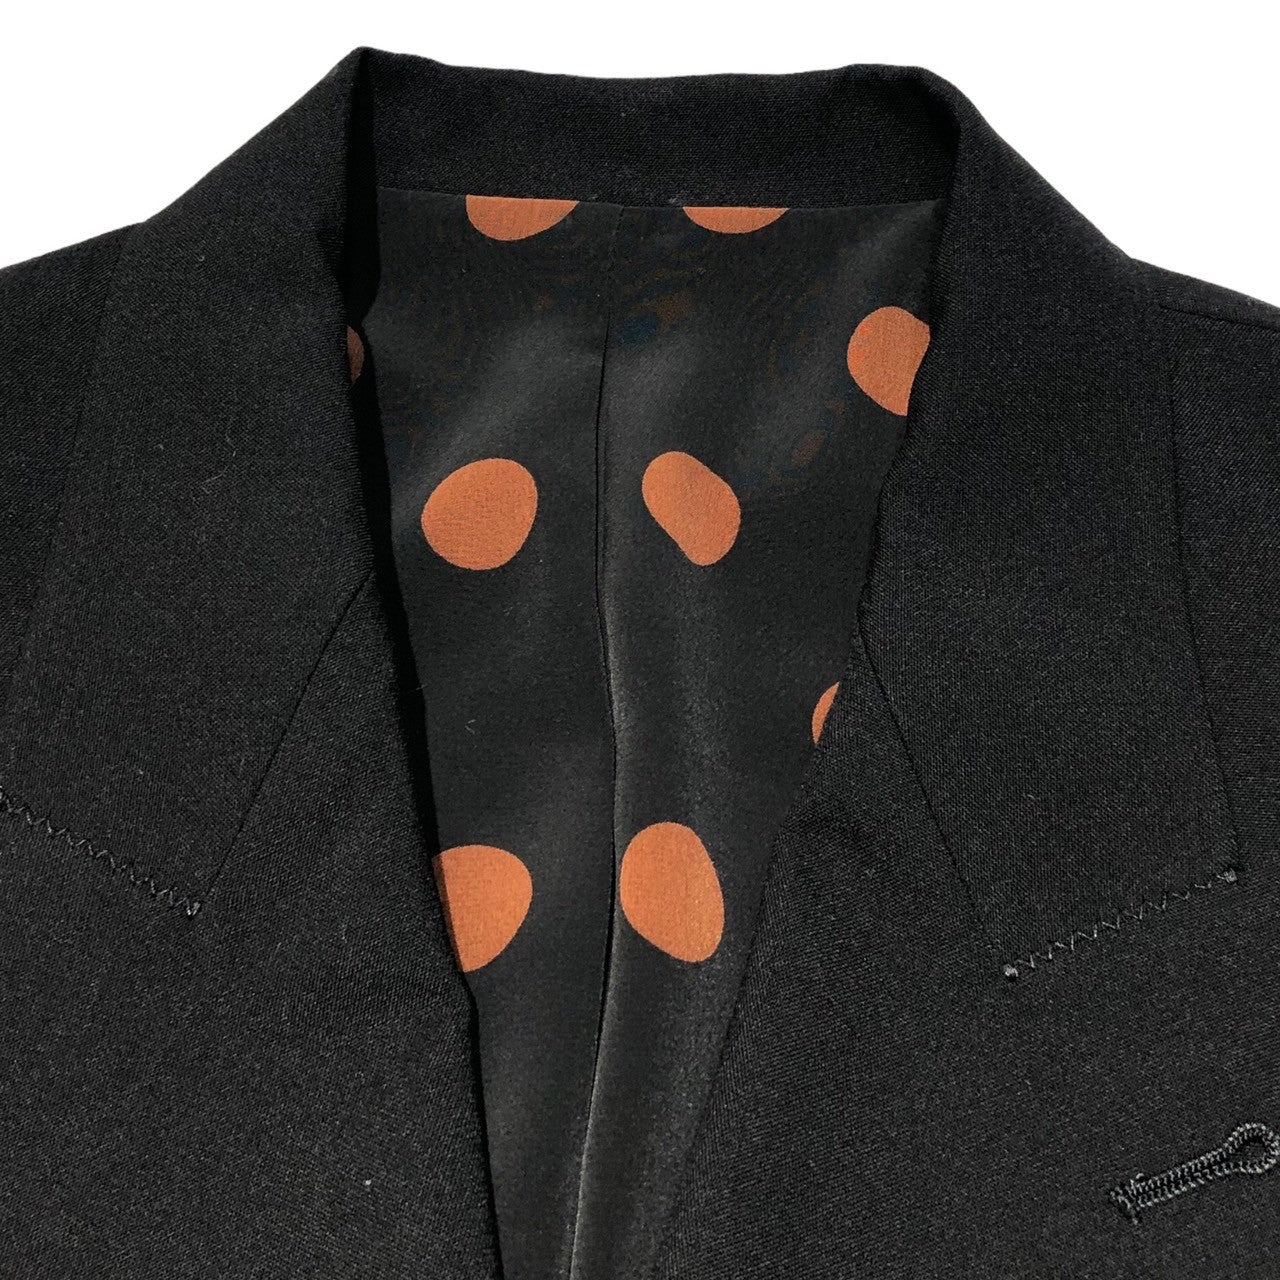 Jean Paul GAULTIER FEMME(ジャンポールゴルチエファム) 90's Design jacket double jacket  setup デザイン ポケット ダブル ジャケット セットアップ 40(L程度) ブラック スラックス テーラード スーツ ドット